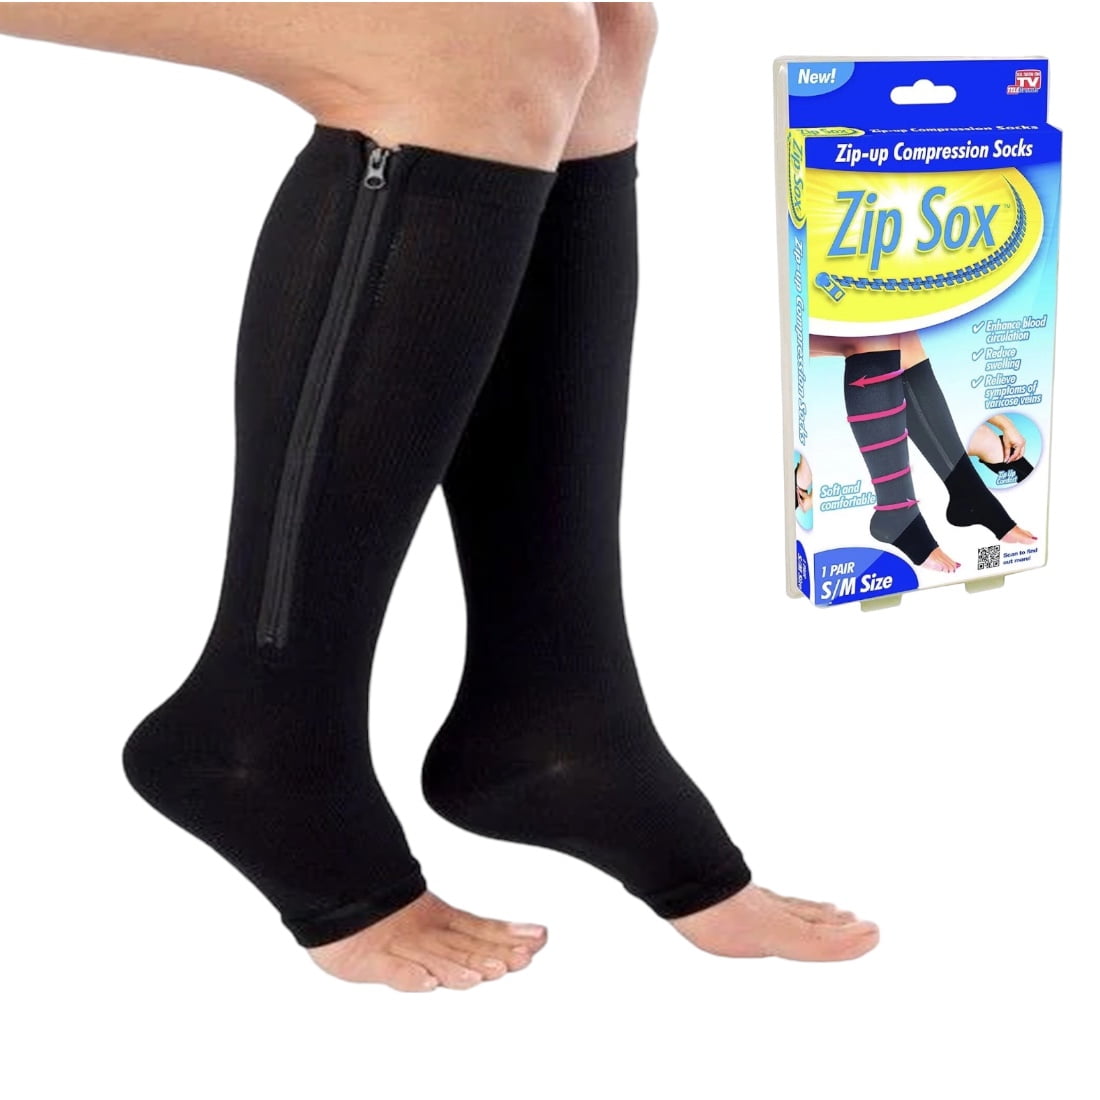 Zip Sox Zip-Up Compression Socks - Small/Medium - Black